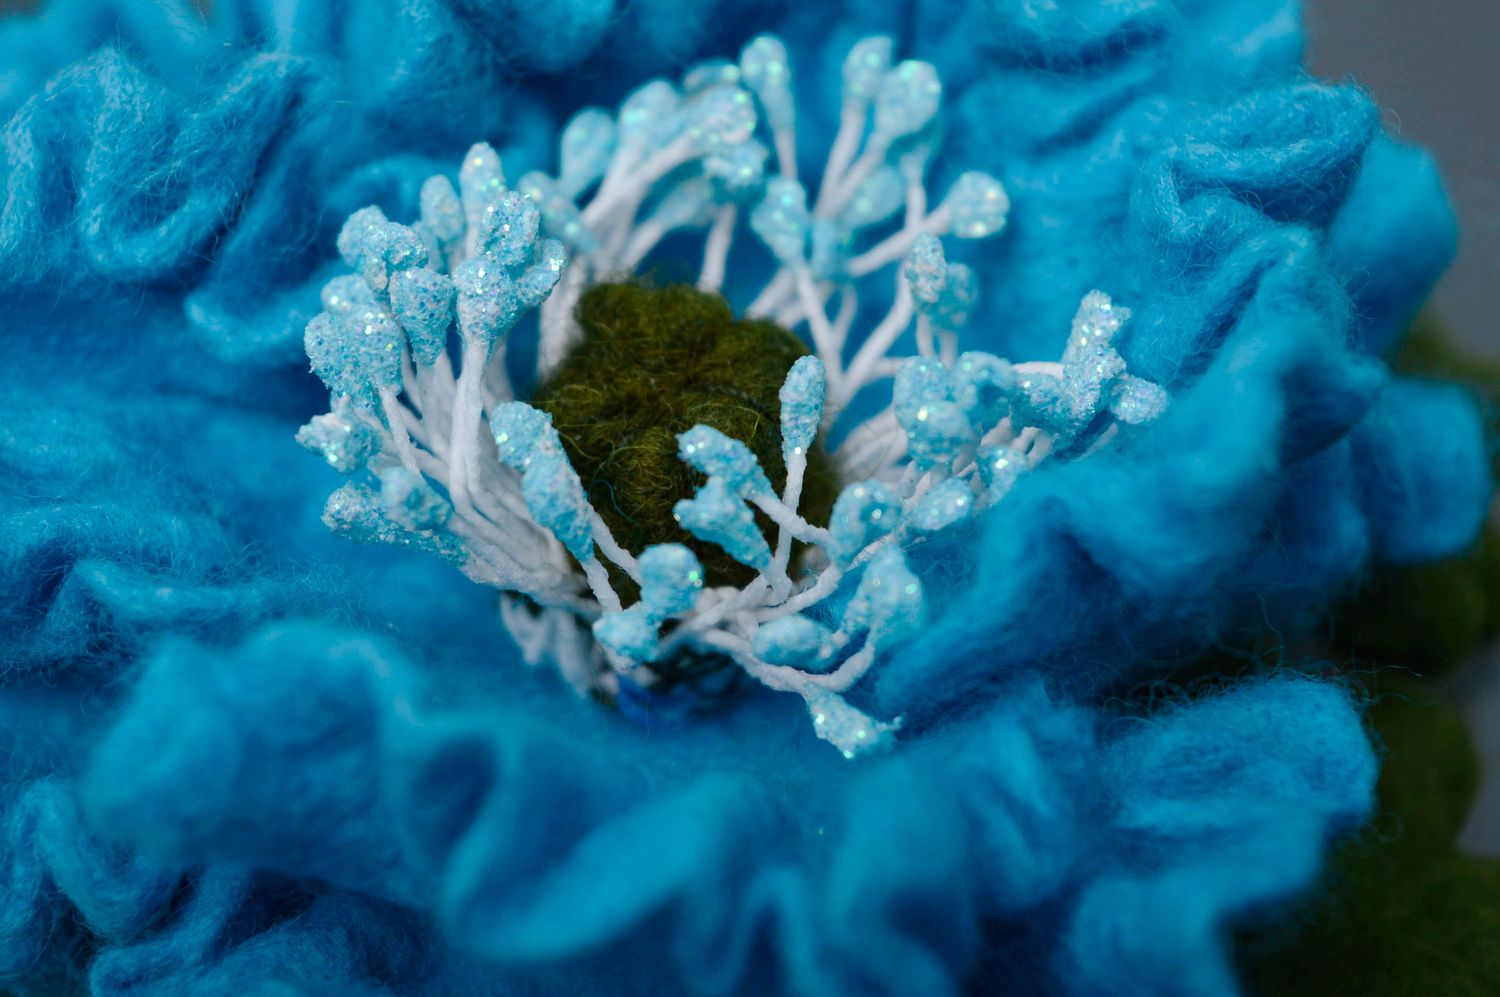 Брошь из шерсти ручной работы в технике валяния Синий цветок фото 2